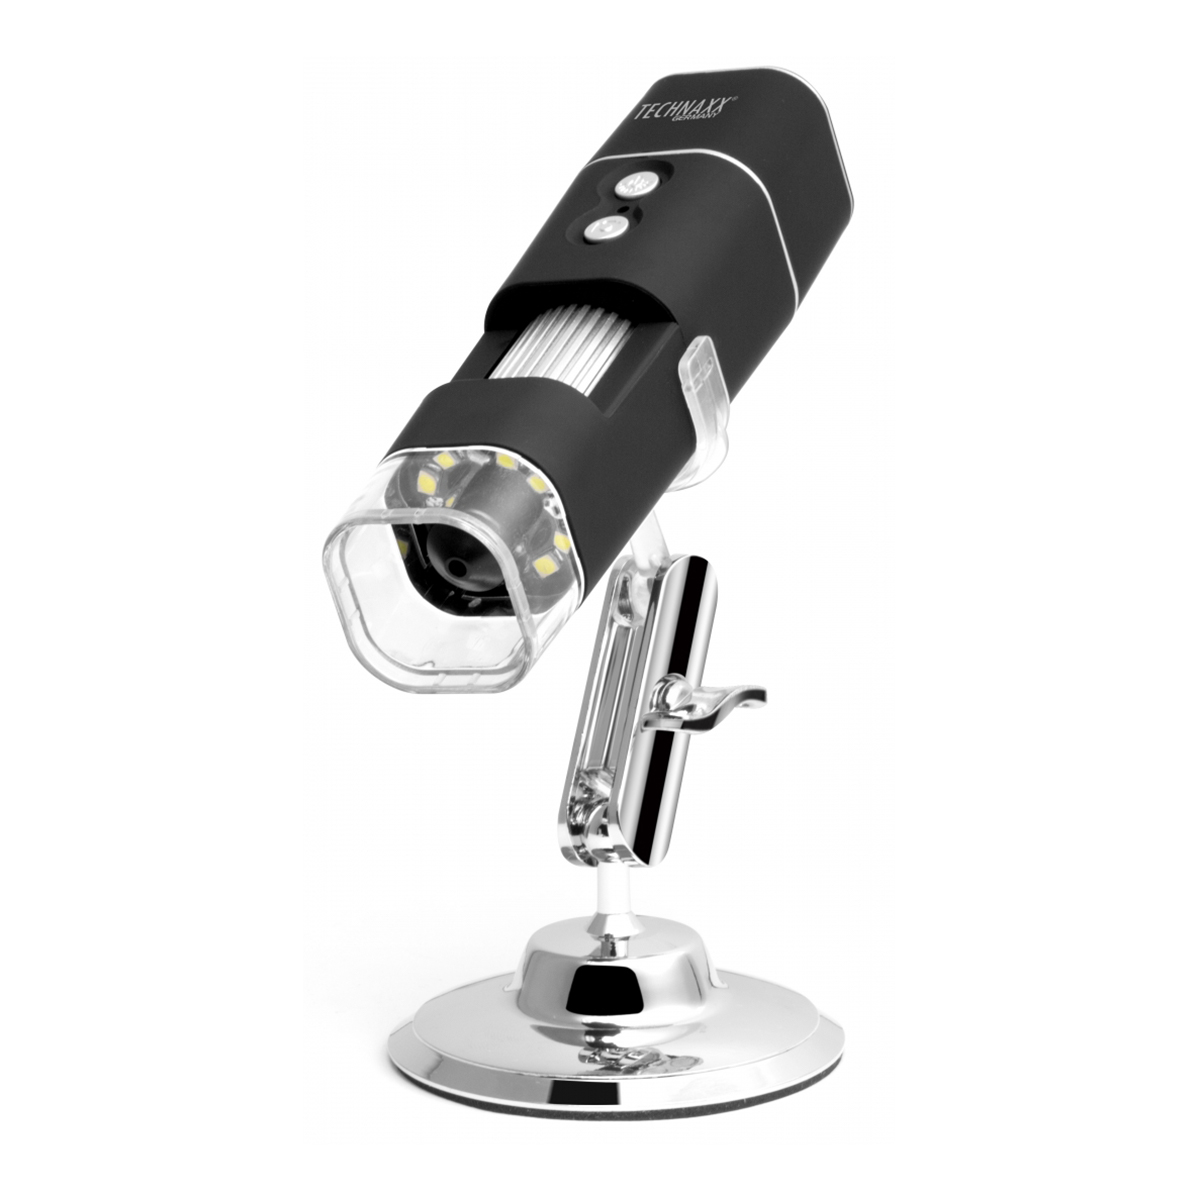 Technaxx TX-158 FullHD Trådlöst Mikroskop